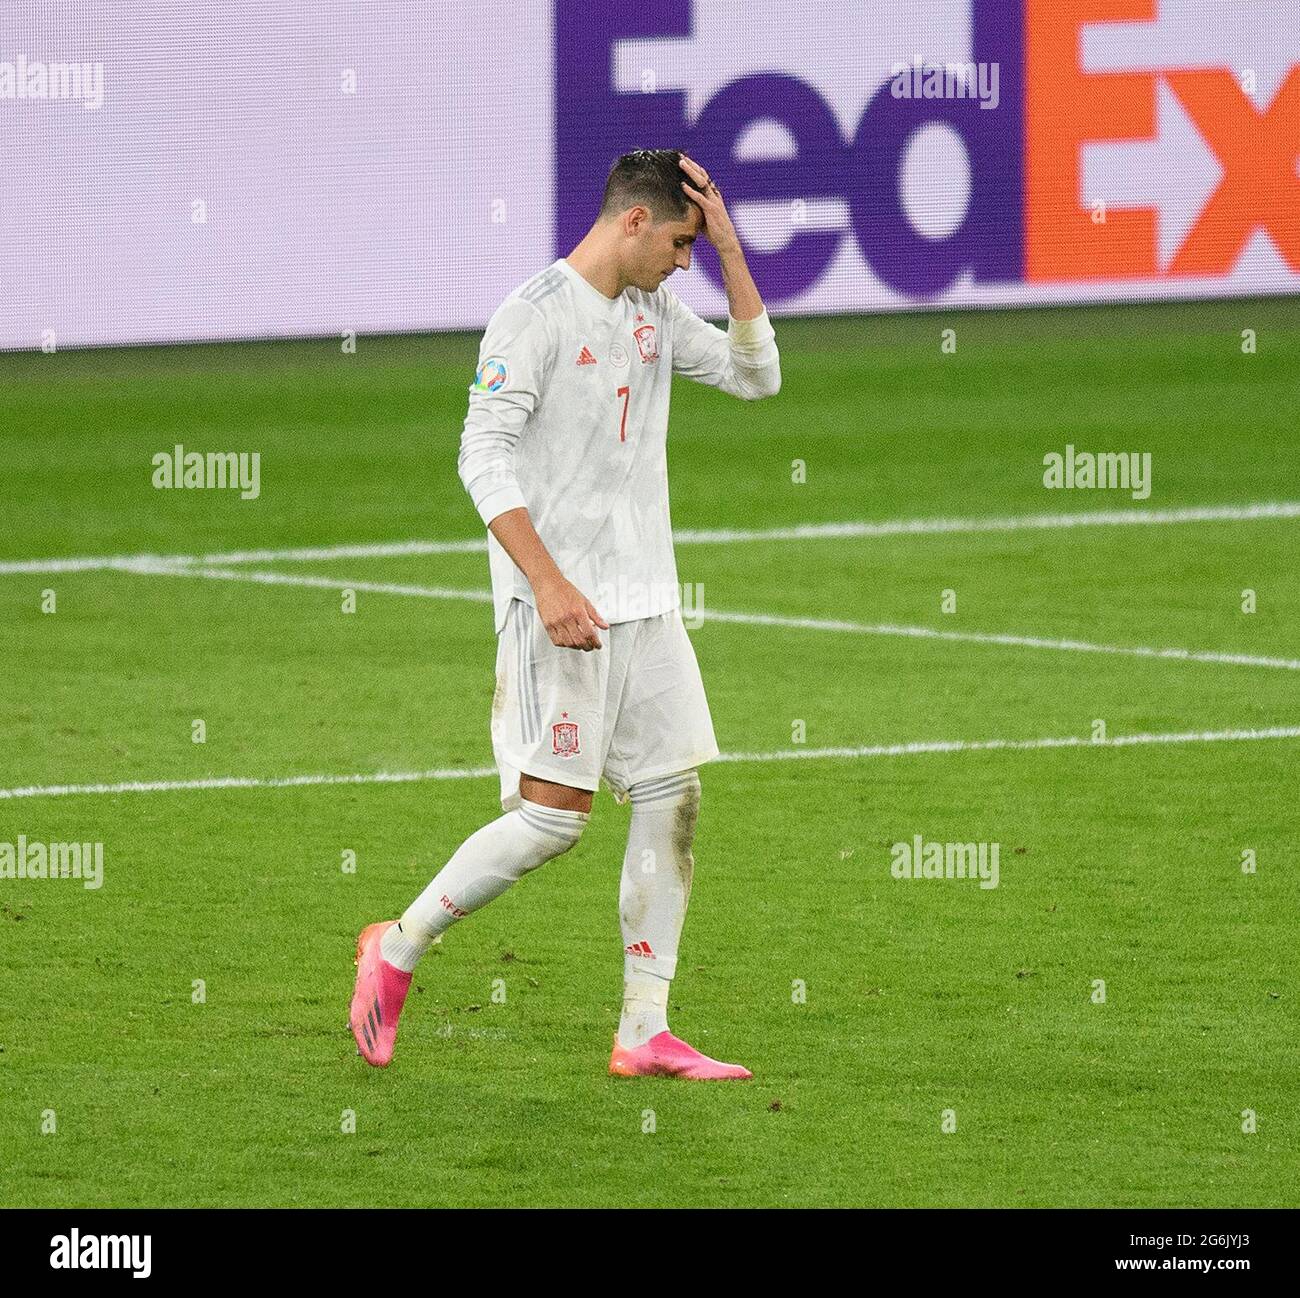 07 juillet 2021 - Italie / Espagne - UEFA Euro 2020 semi-finale - Wembley - Londres Alvaro Morata d'Espagne est abattu après avoir vu sa pénalité sauvée par Gianluigi Donnarumma dans la fusillade de pénalité Picture Credit : © Mark pain / Alamy Live News Banque D'Images